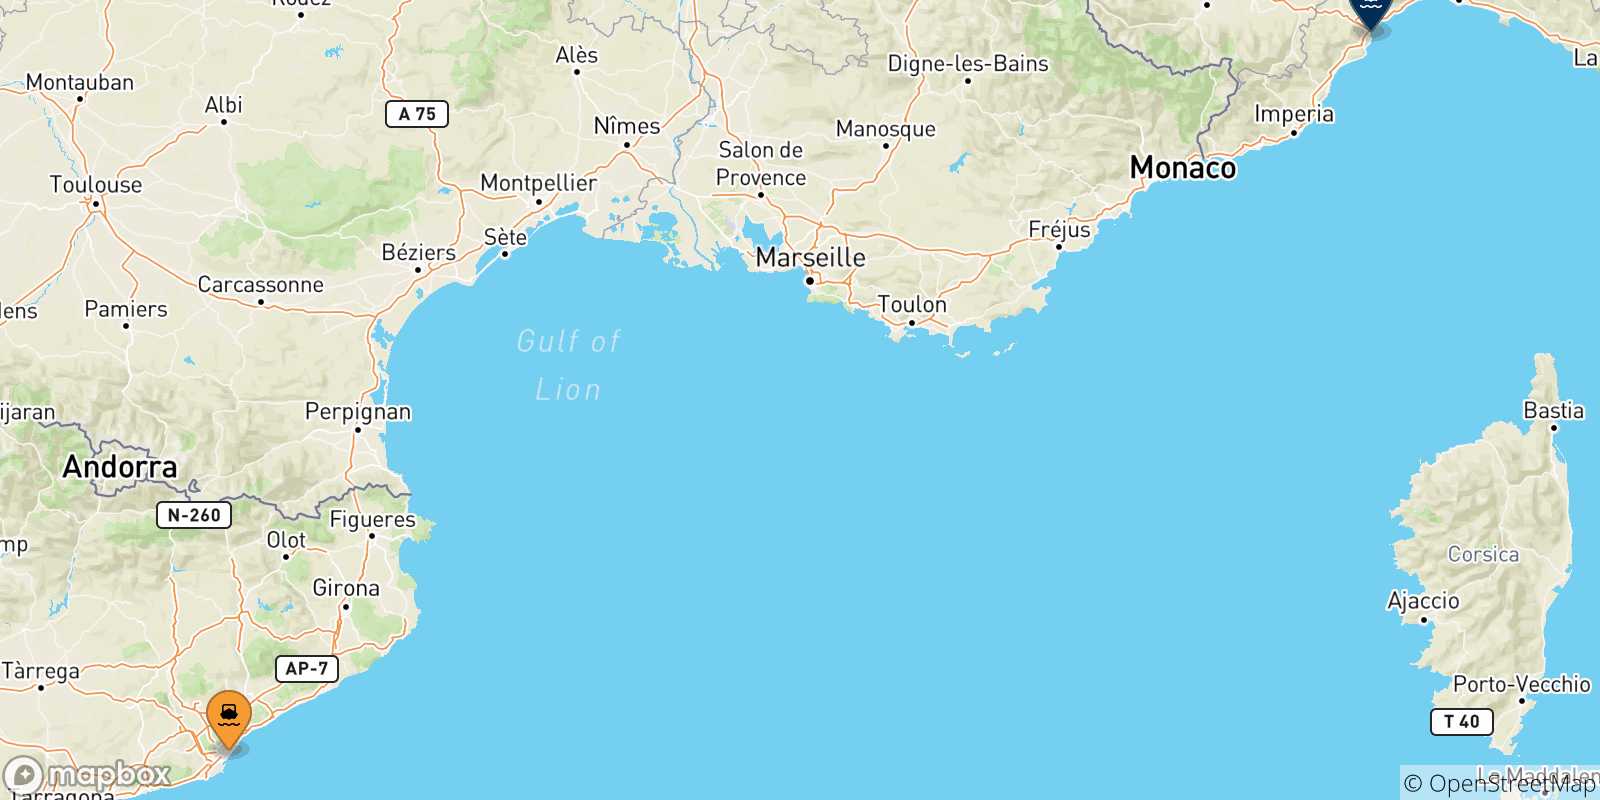 Mappa delle possibili rotte tra la Spagna e Savona